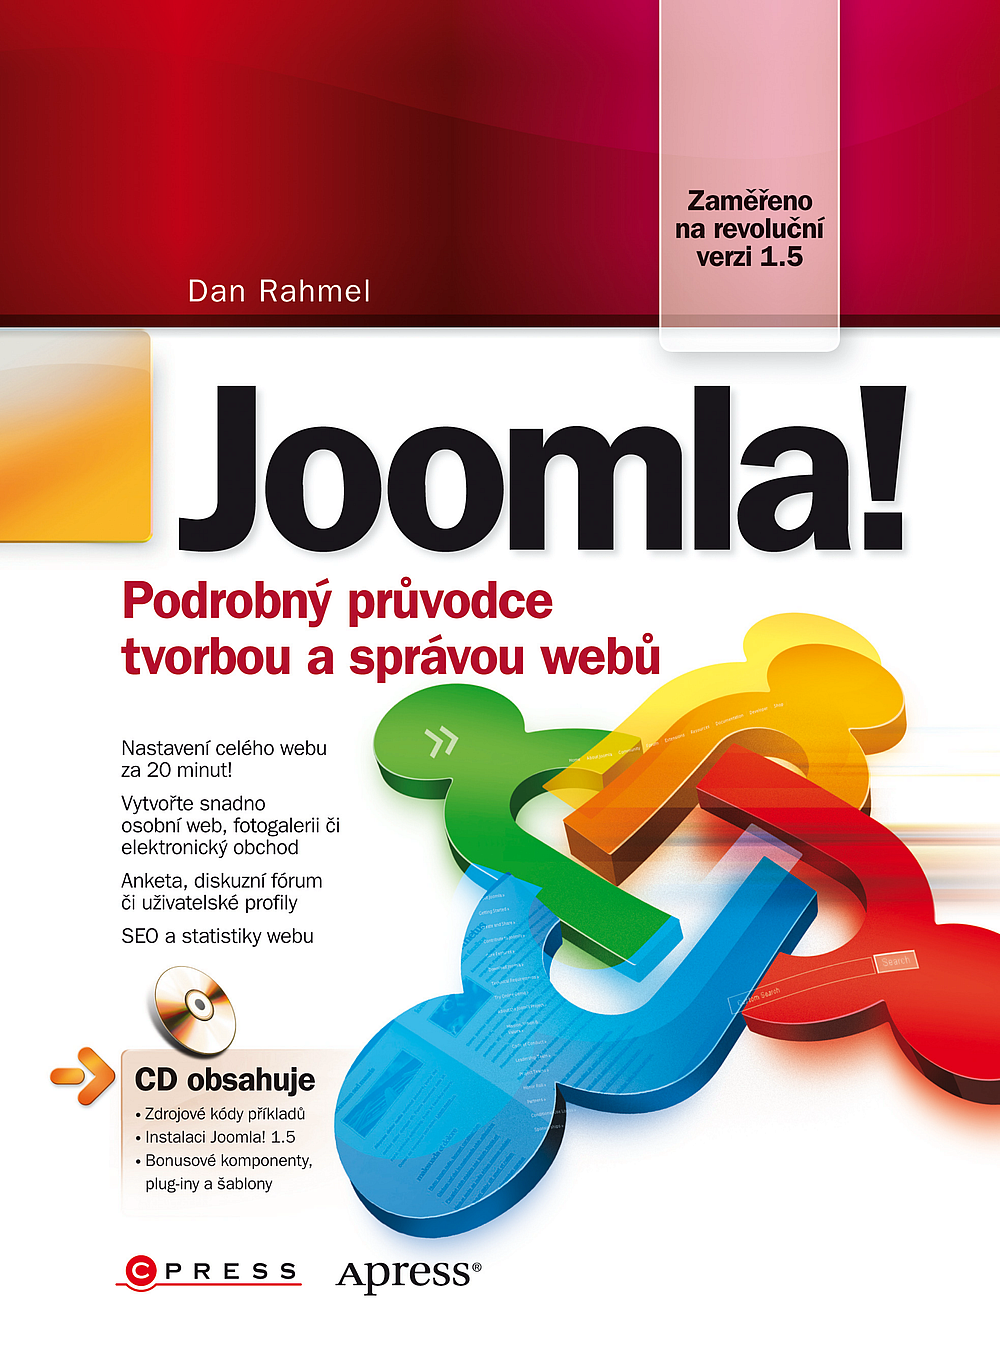 Joomla! Podrobný průvodce tvorbou a správou webu